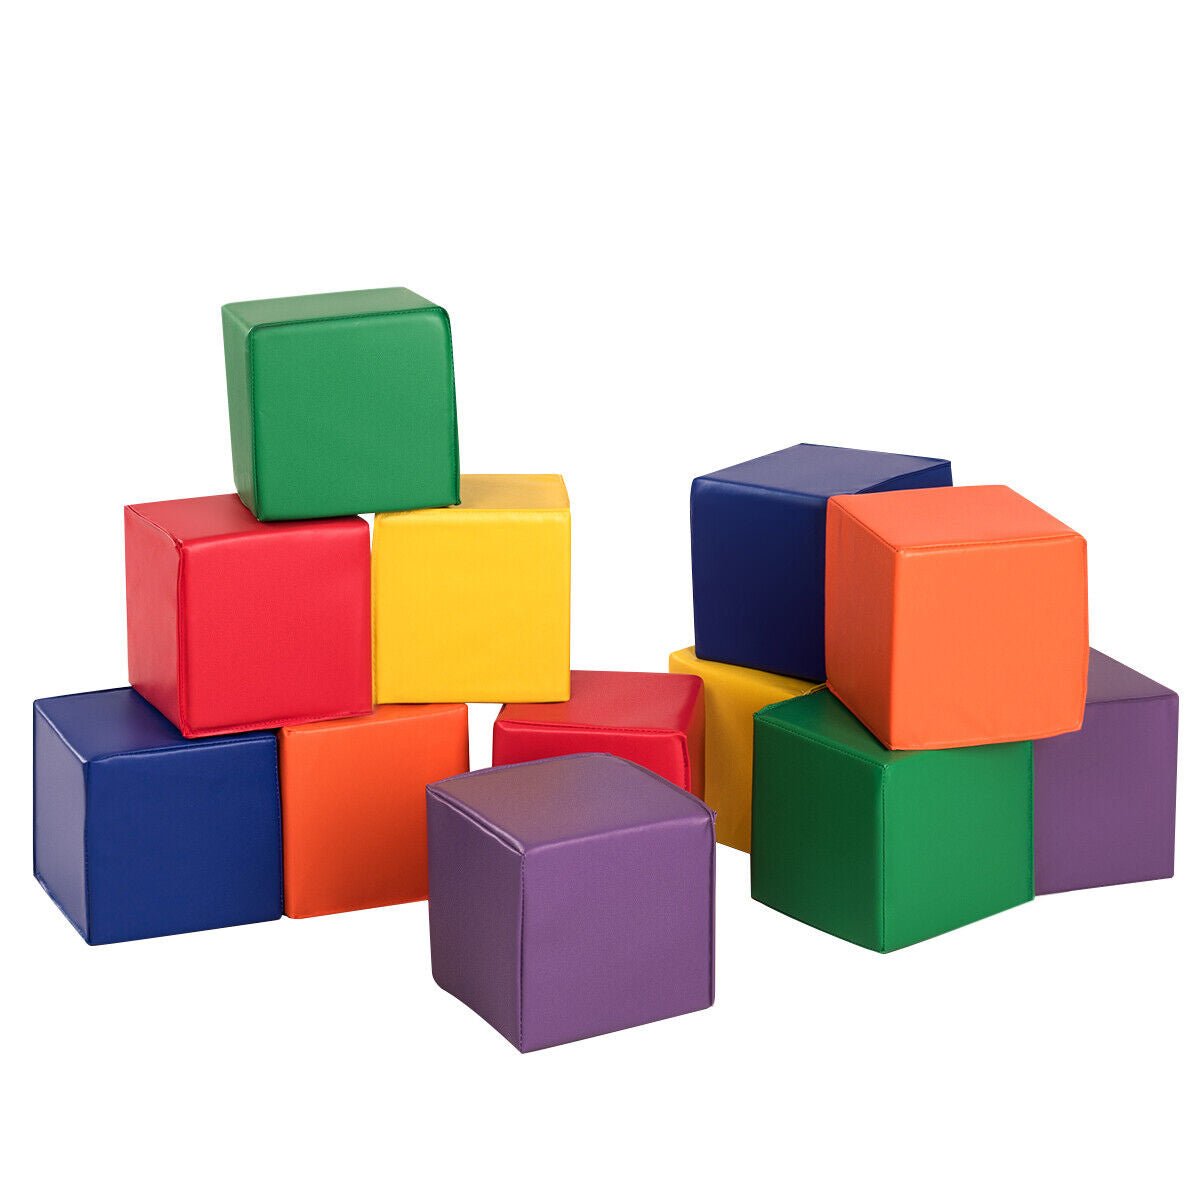 Colourful Foam Building Blocks for Kids - Shop at Kids Mega Mart